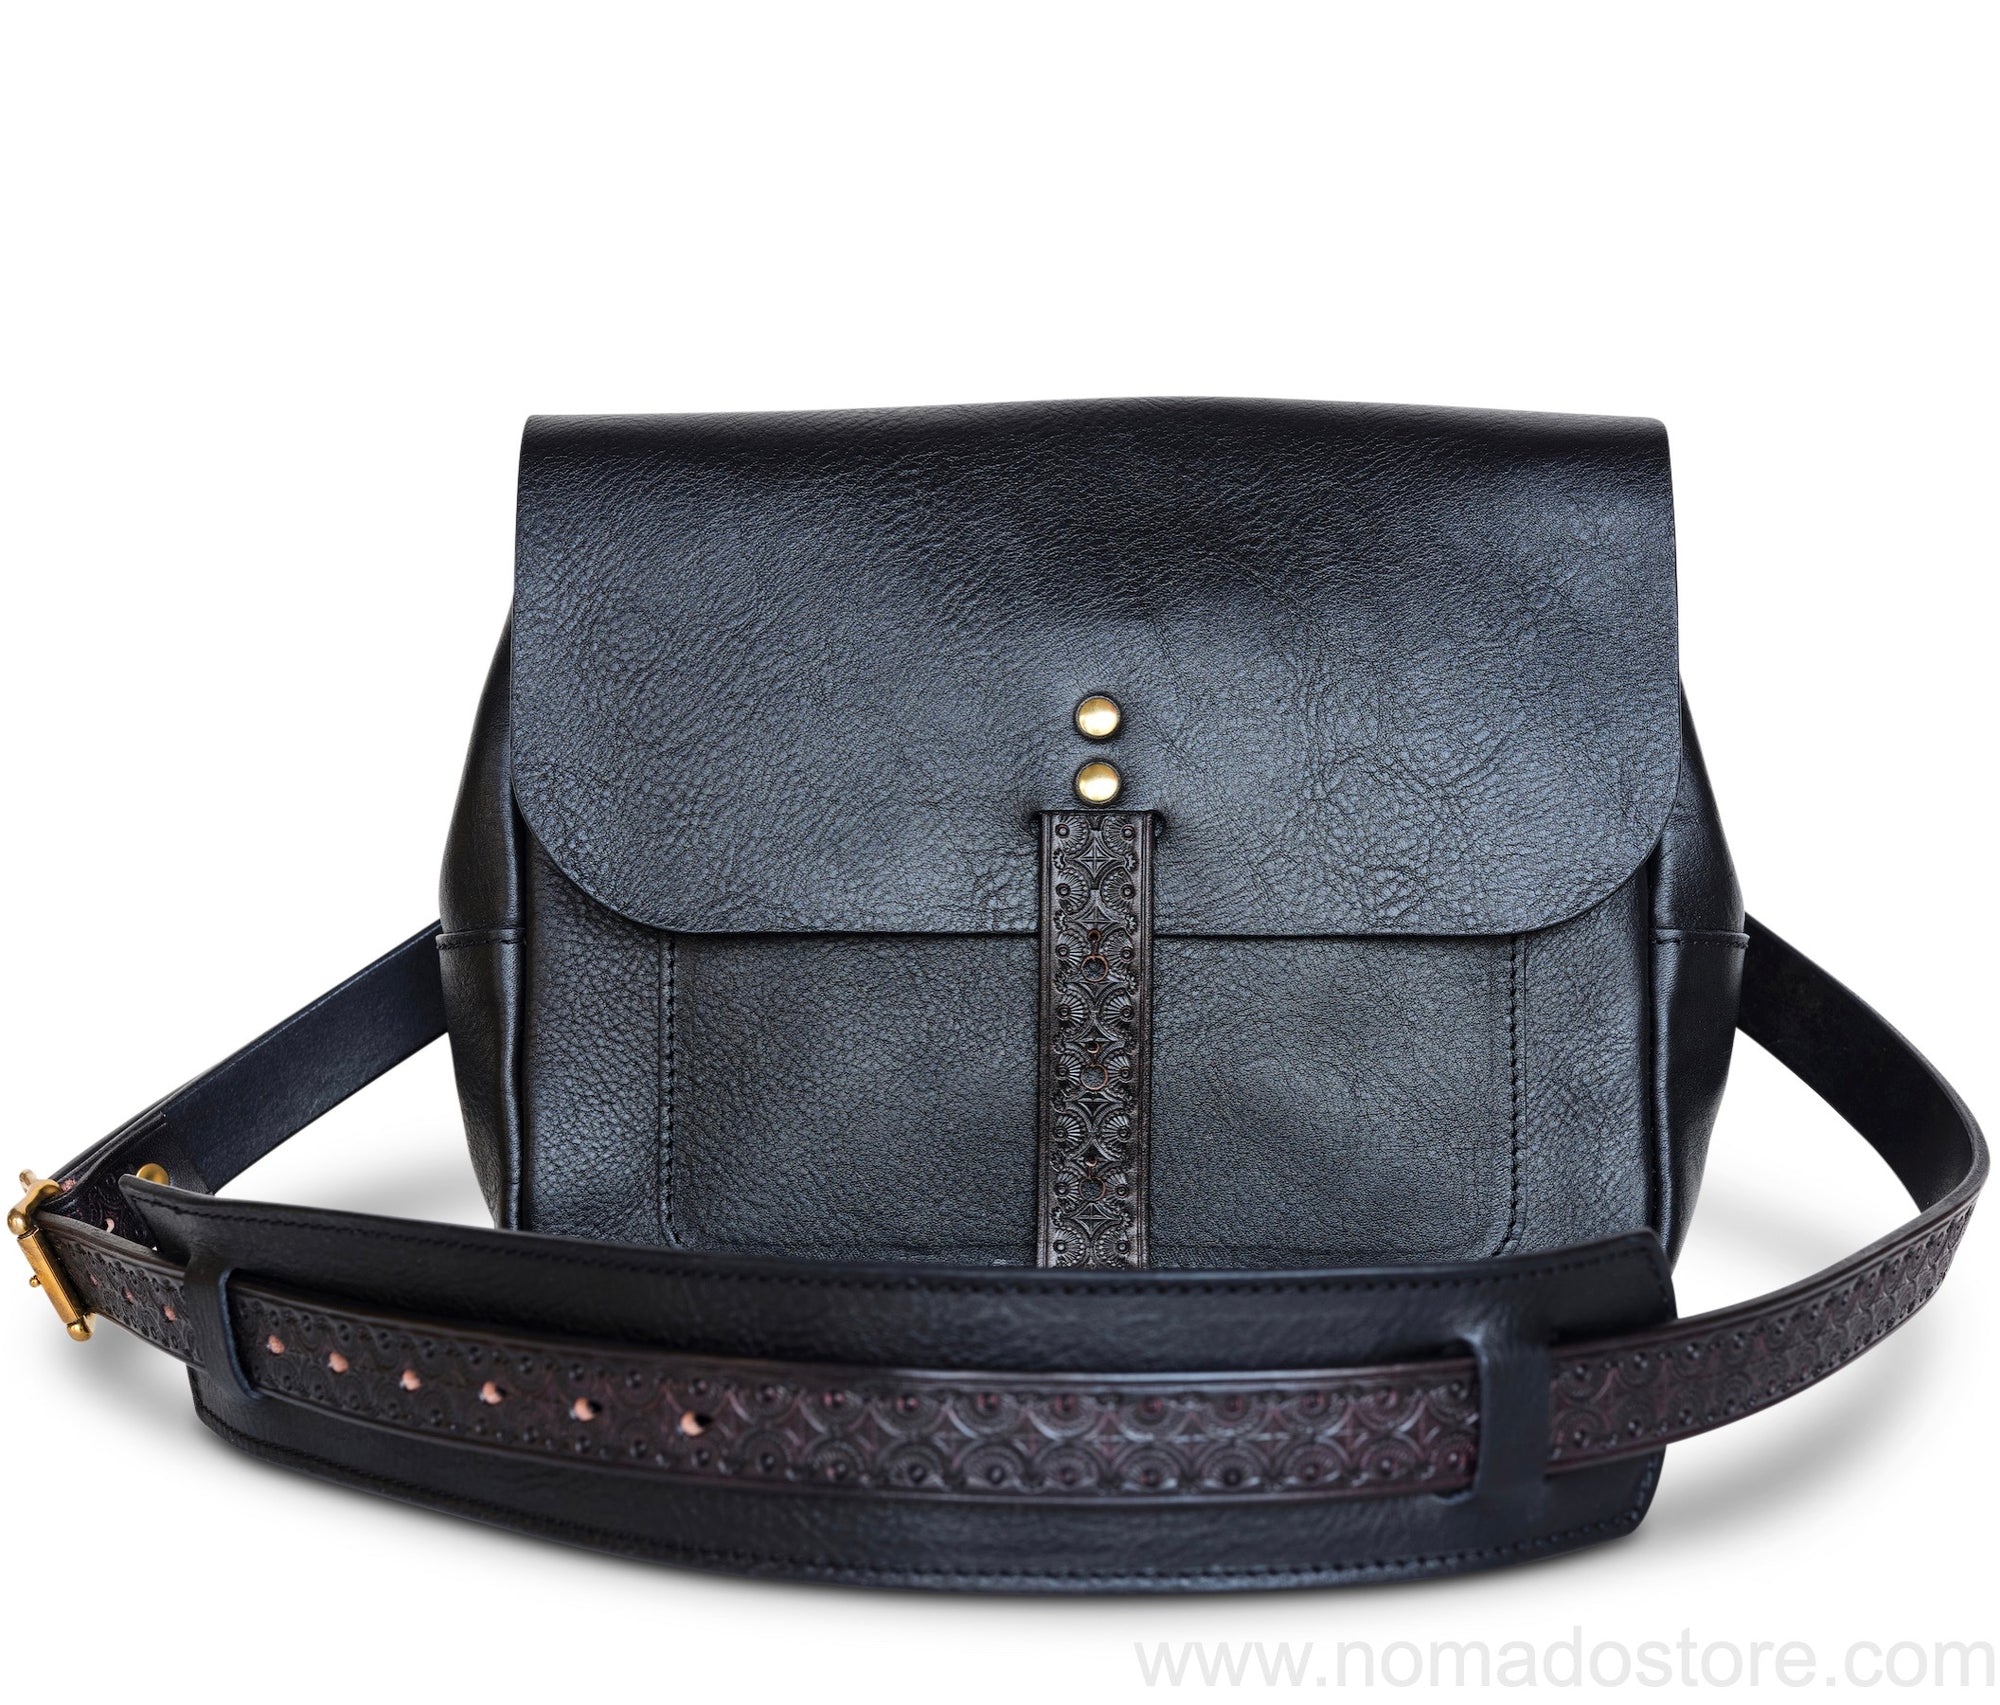 Nanala Design Small Postman Bag (Single Strap) Black